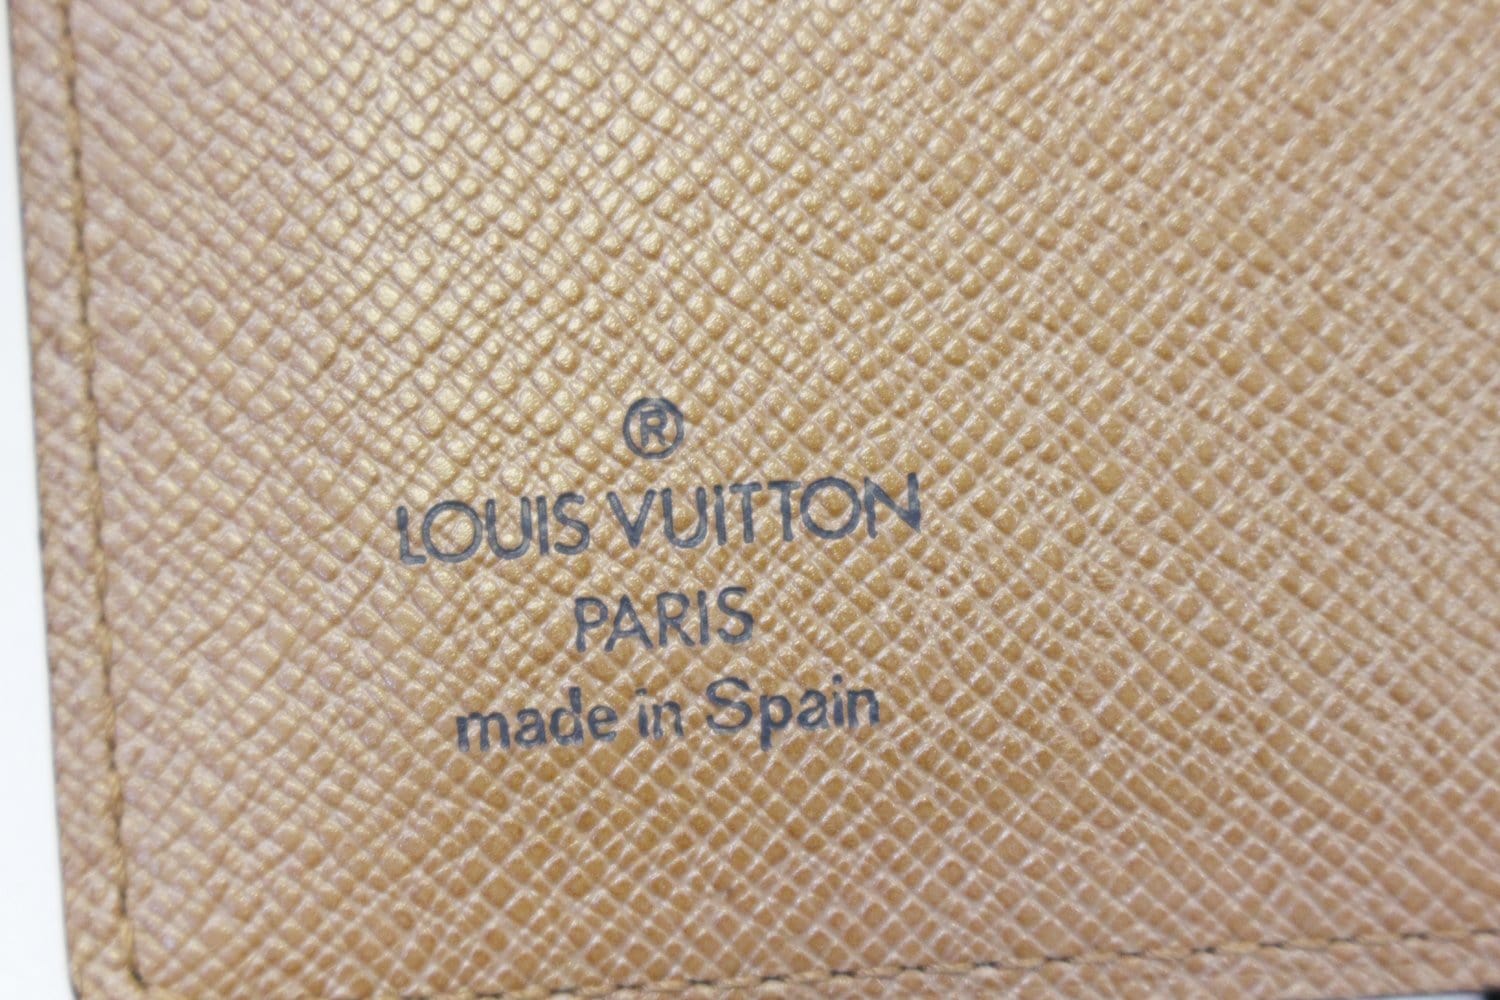 LOUIS VUITTON Monogram Canvas Pochette Photo Case - Last Call